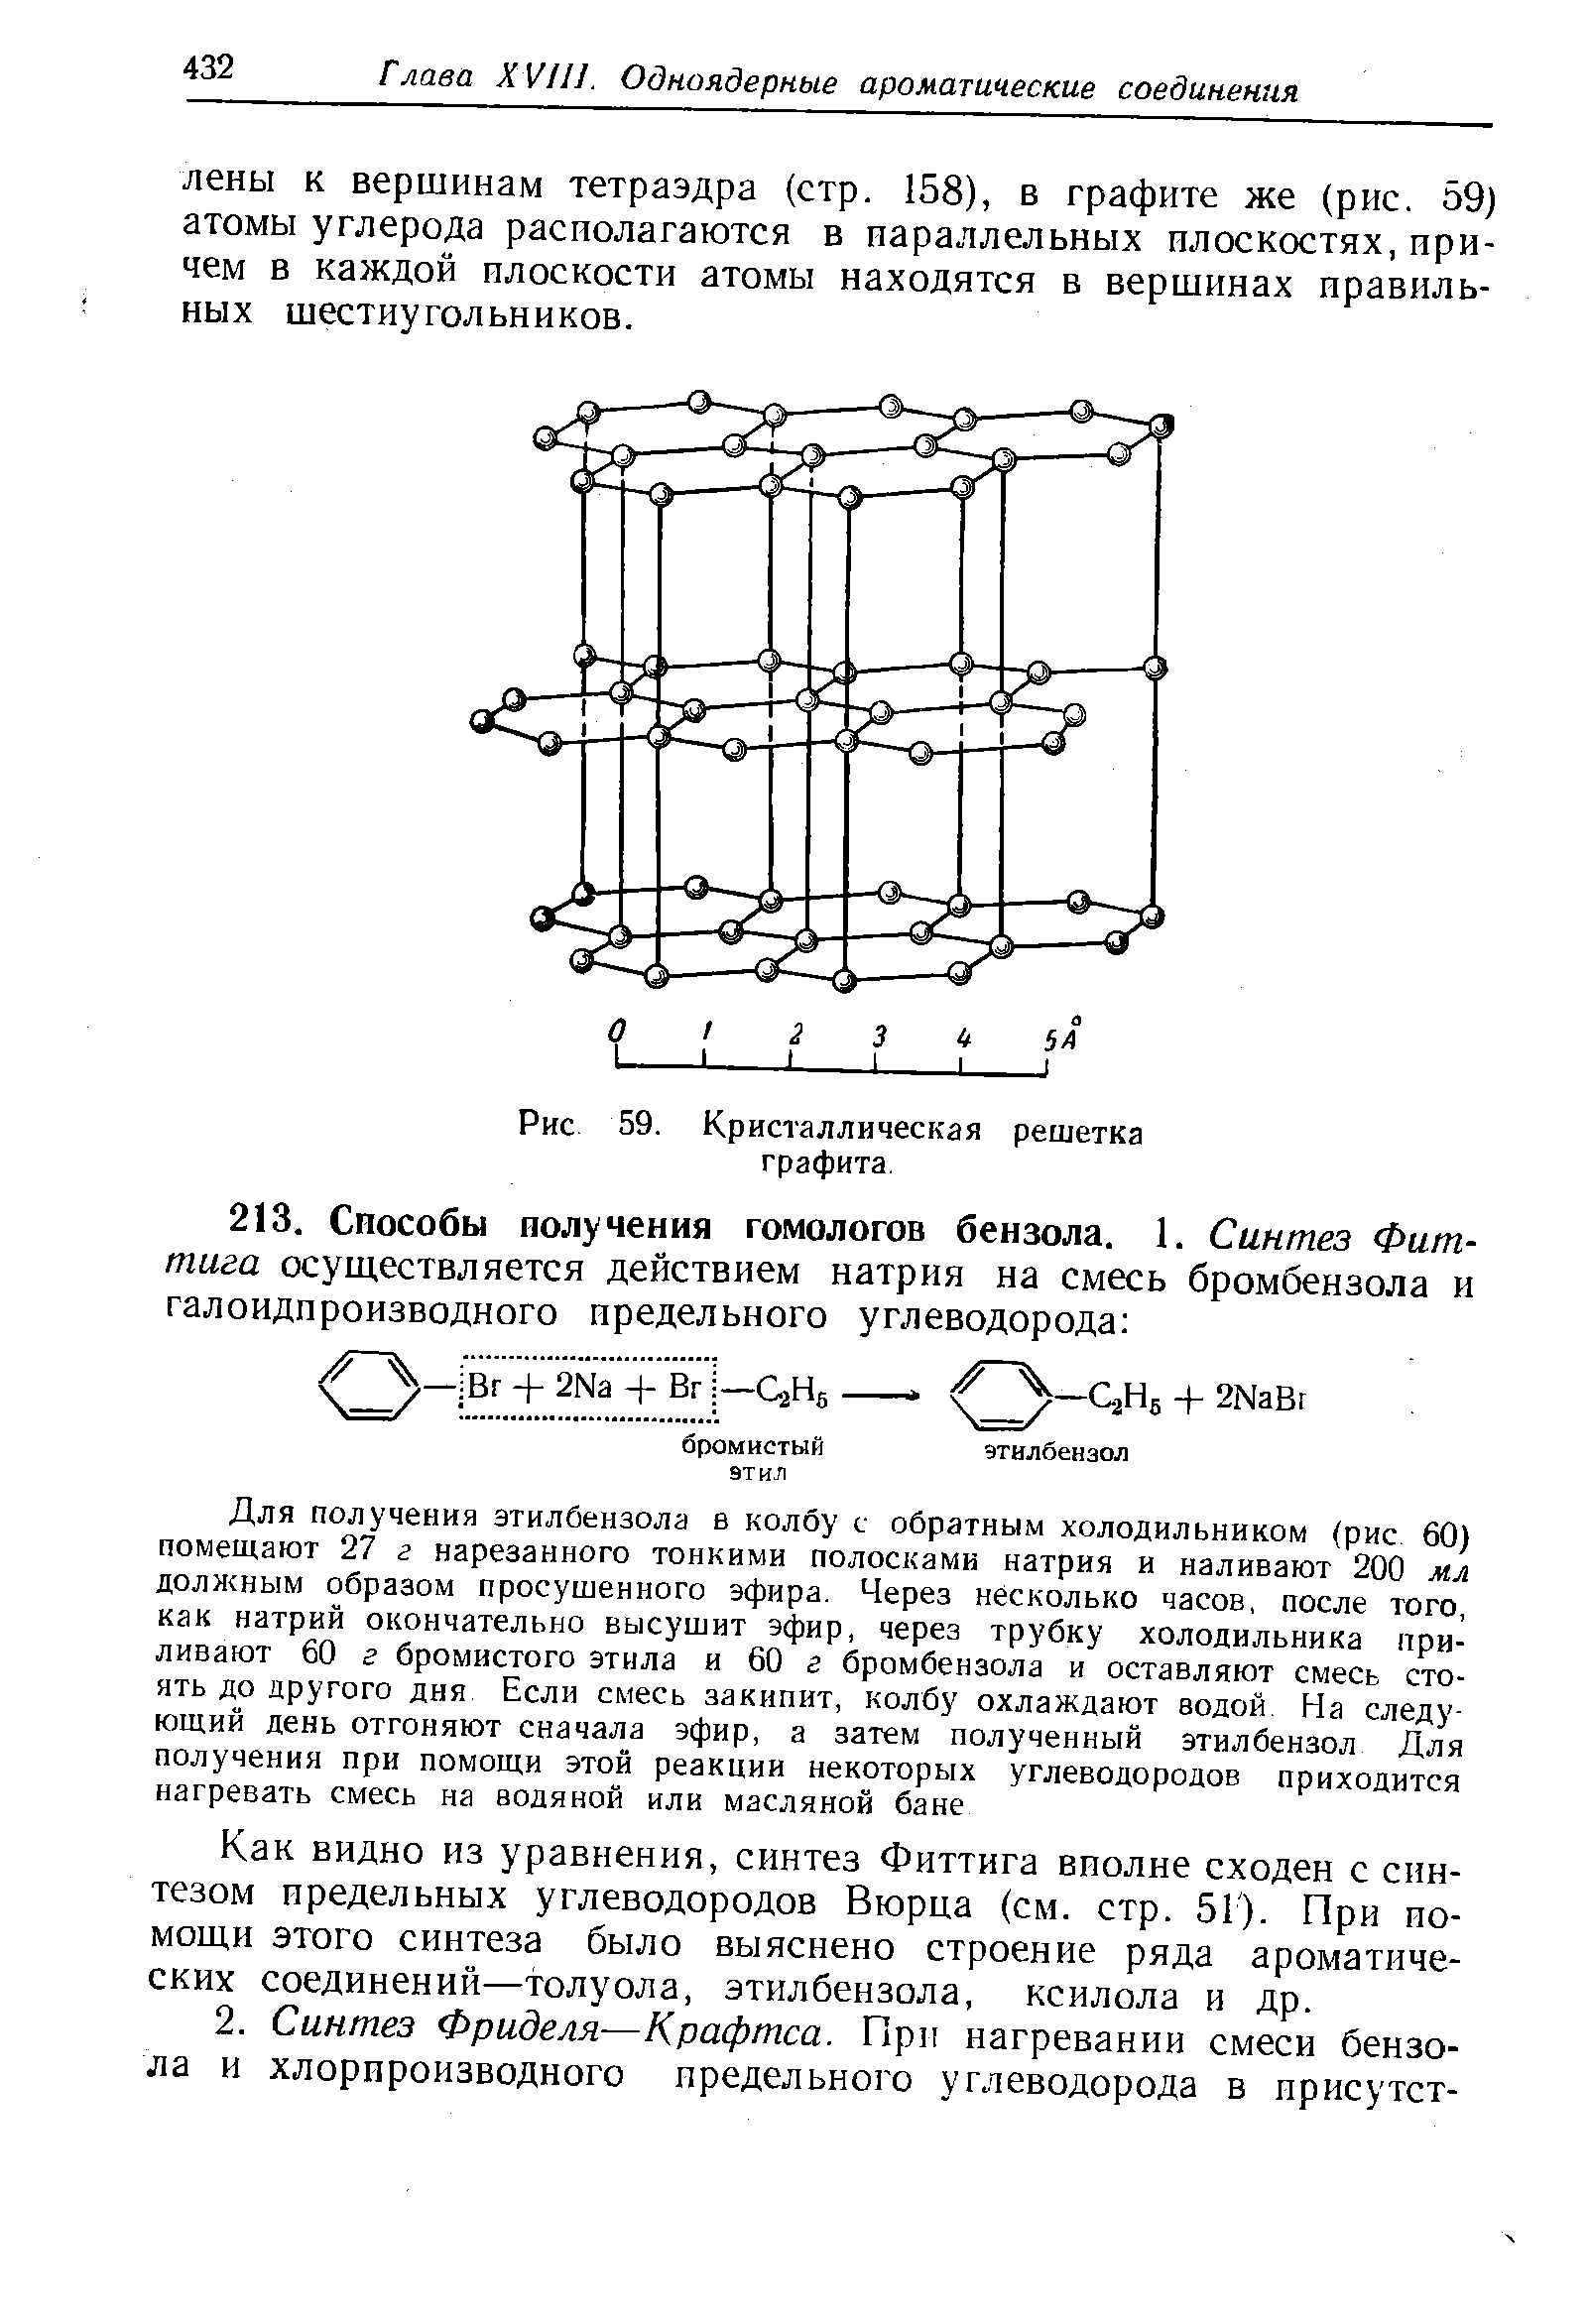 Как видно из уравнения, синтез Фиттига вполне сходен с синтезом предельных углеводородов Вюрца (см. стр. 51). При помощи этого синтеза было выяснено строение ряда ароматических соединений—толуола, этилбензола, ксилола и др.